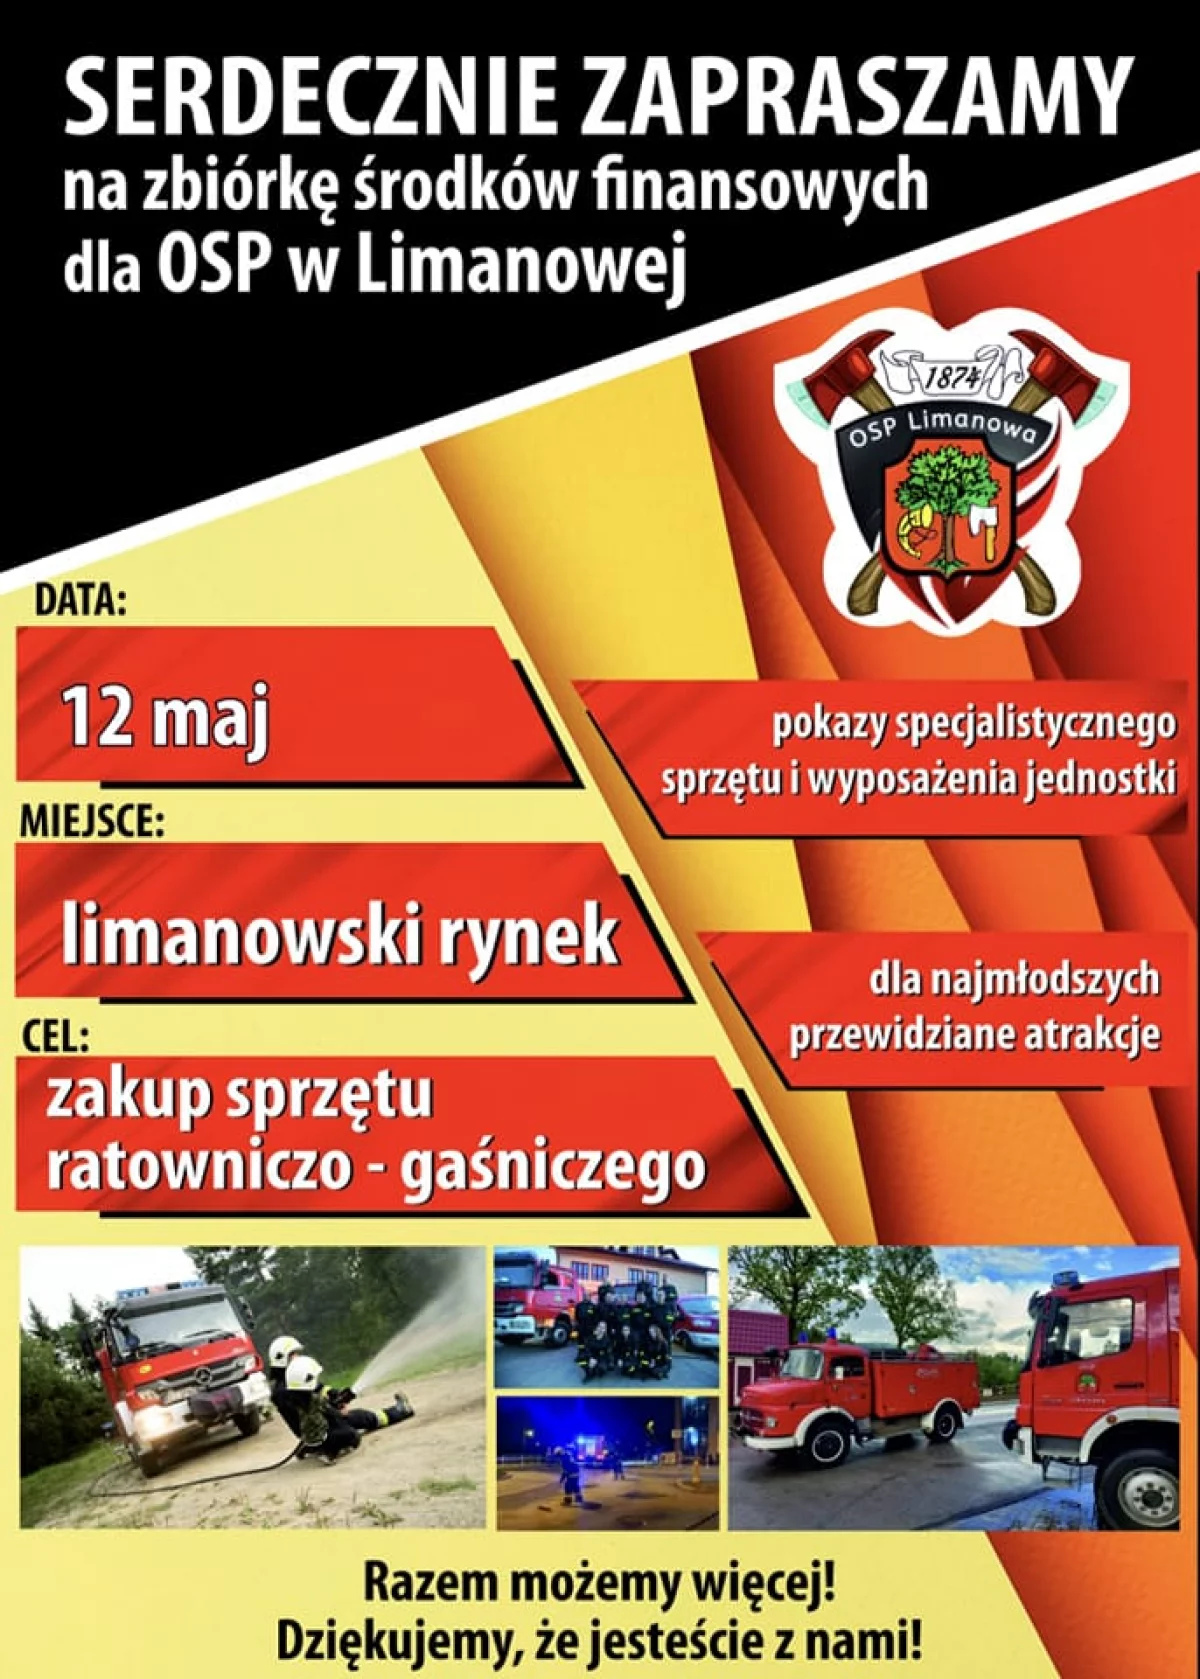 12 maja odbędzie się zbiórka strażacka na limanowskim rynku